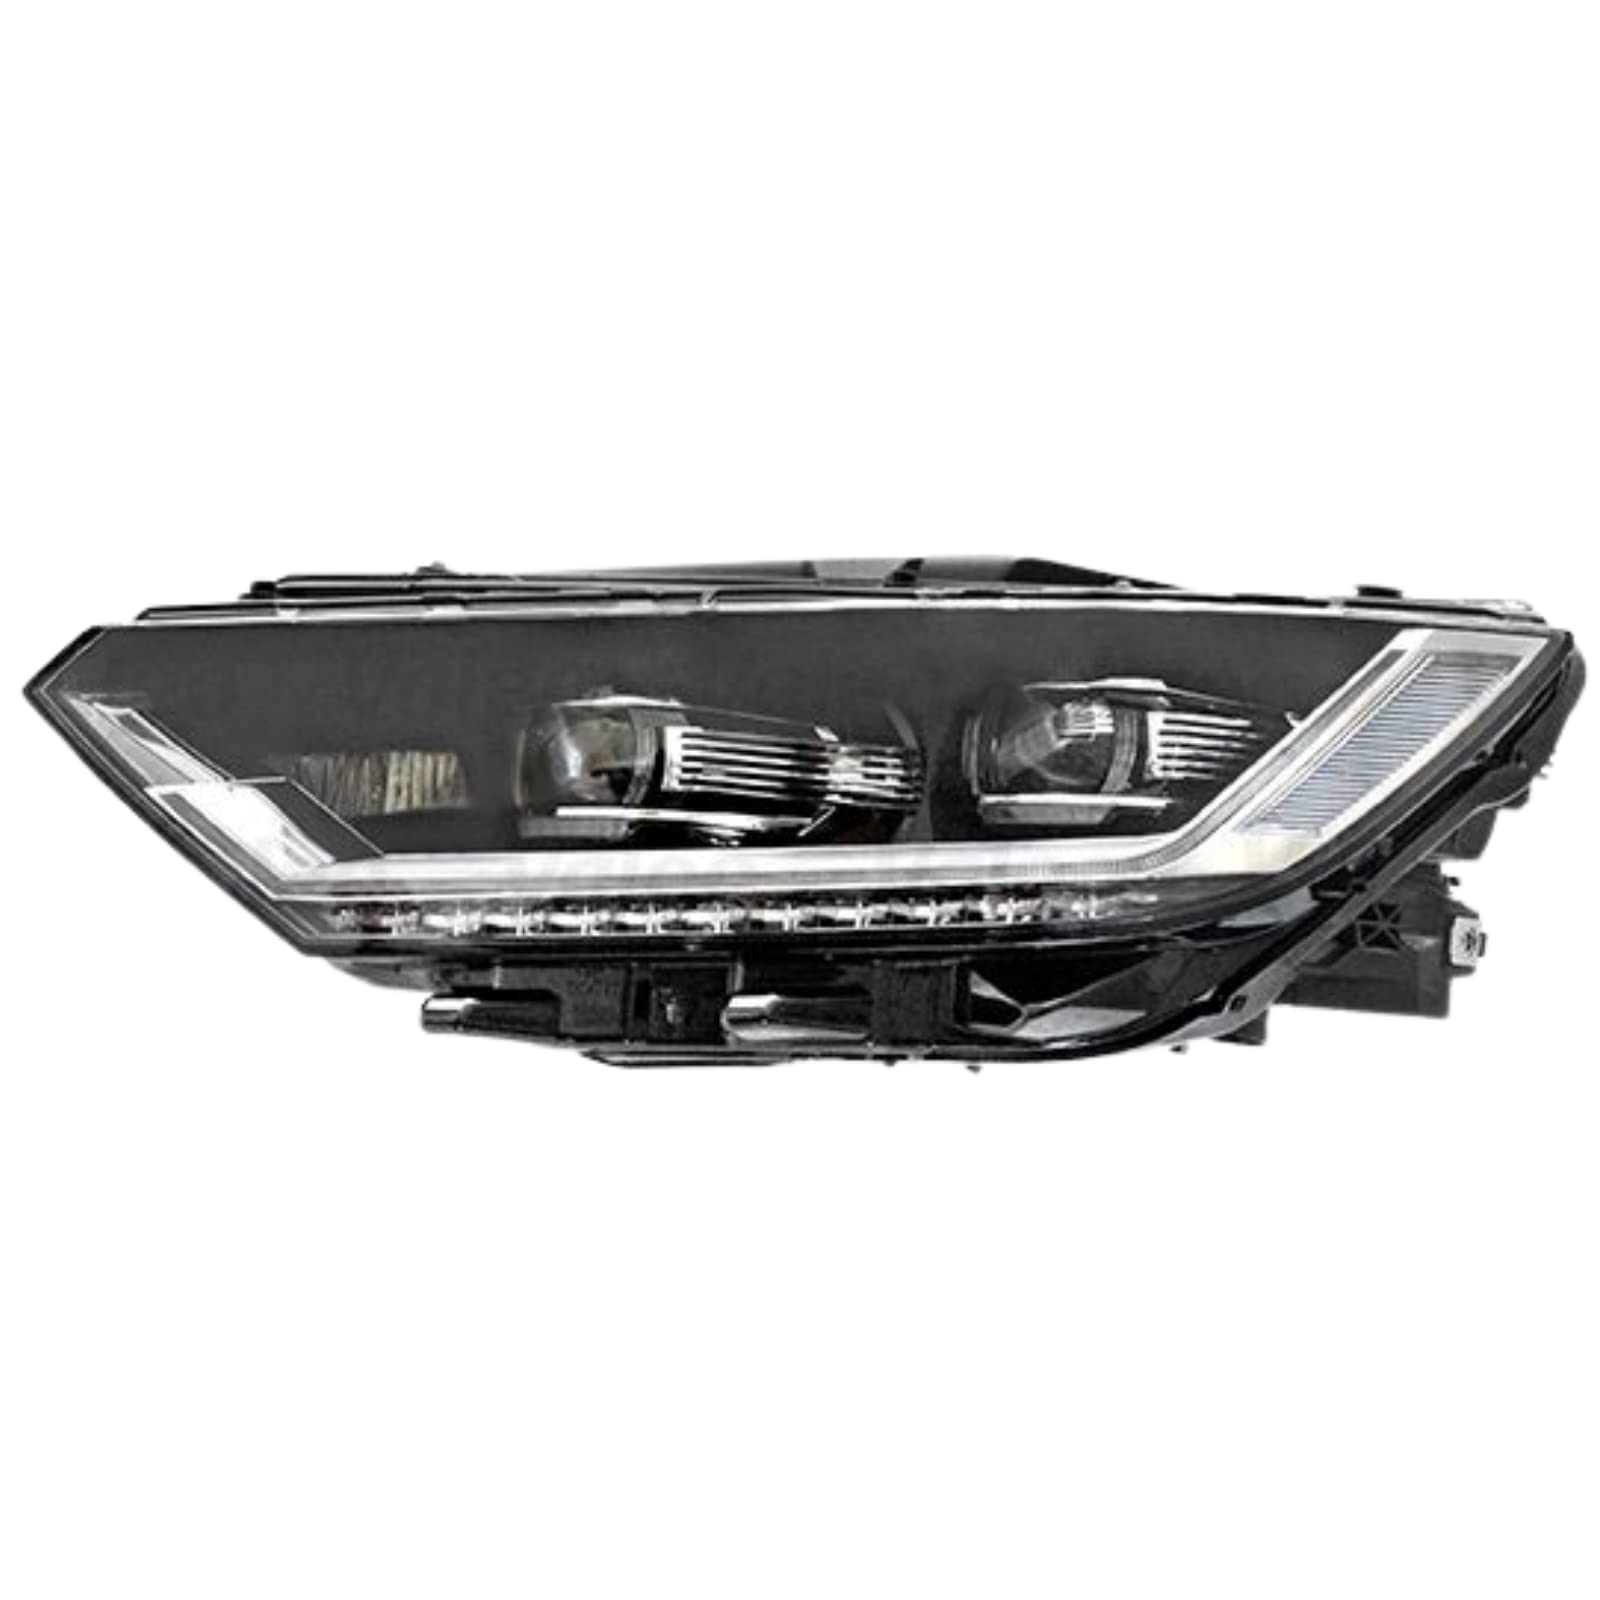 VALEO LED-Scheinwerfer, Teilenummer 46630 für die Fahrzeugmodelle VOLKSWAGEN Passat VIII (2014 > 2019) von Valeo